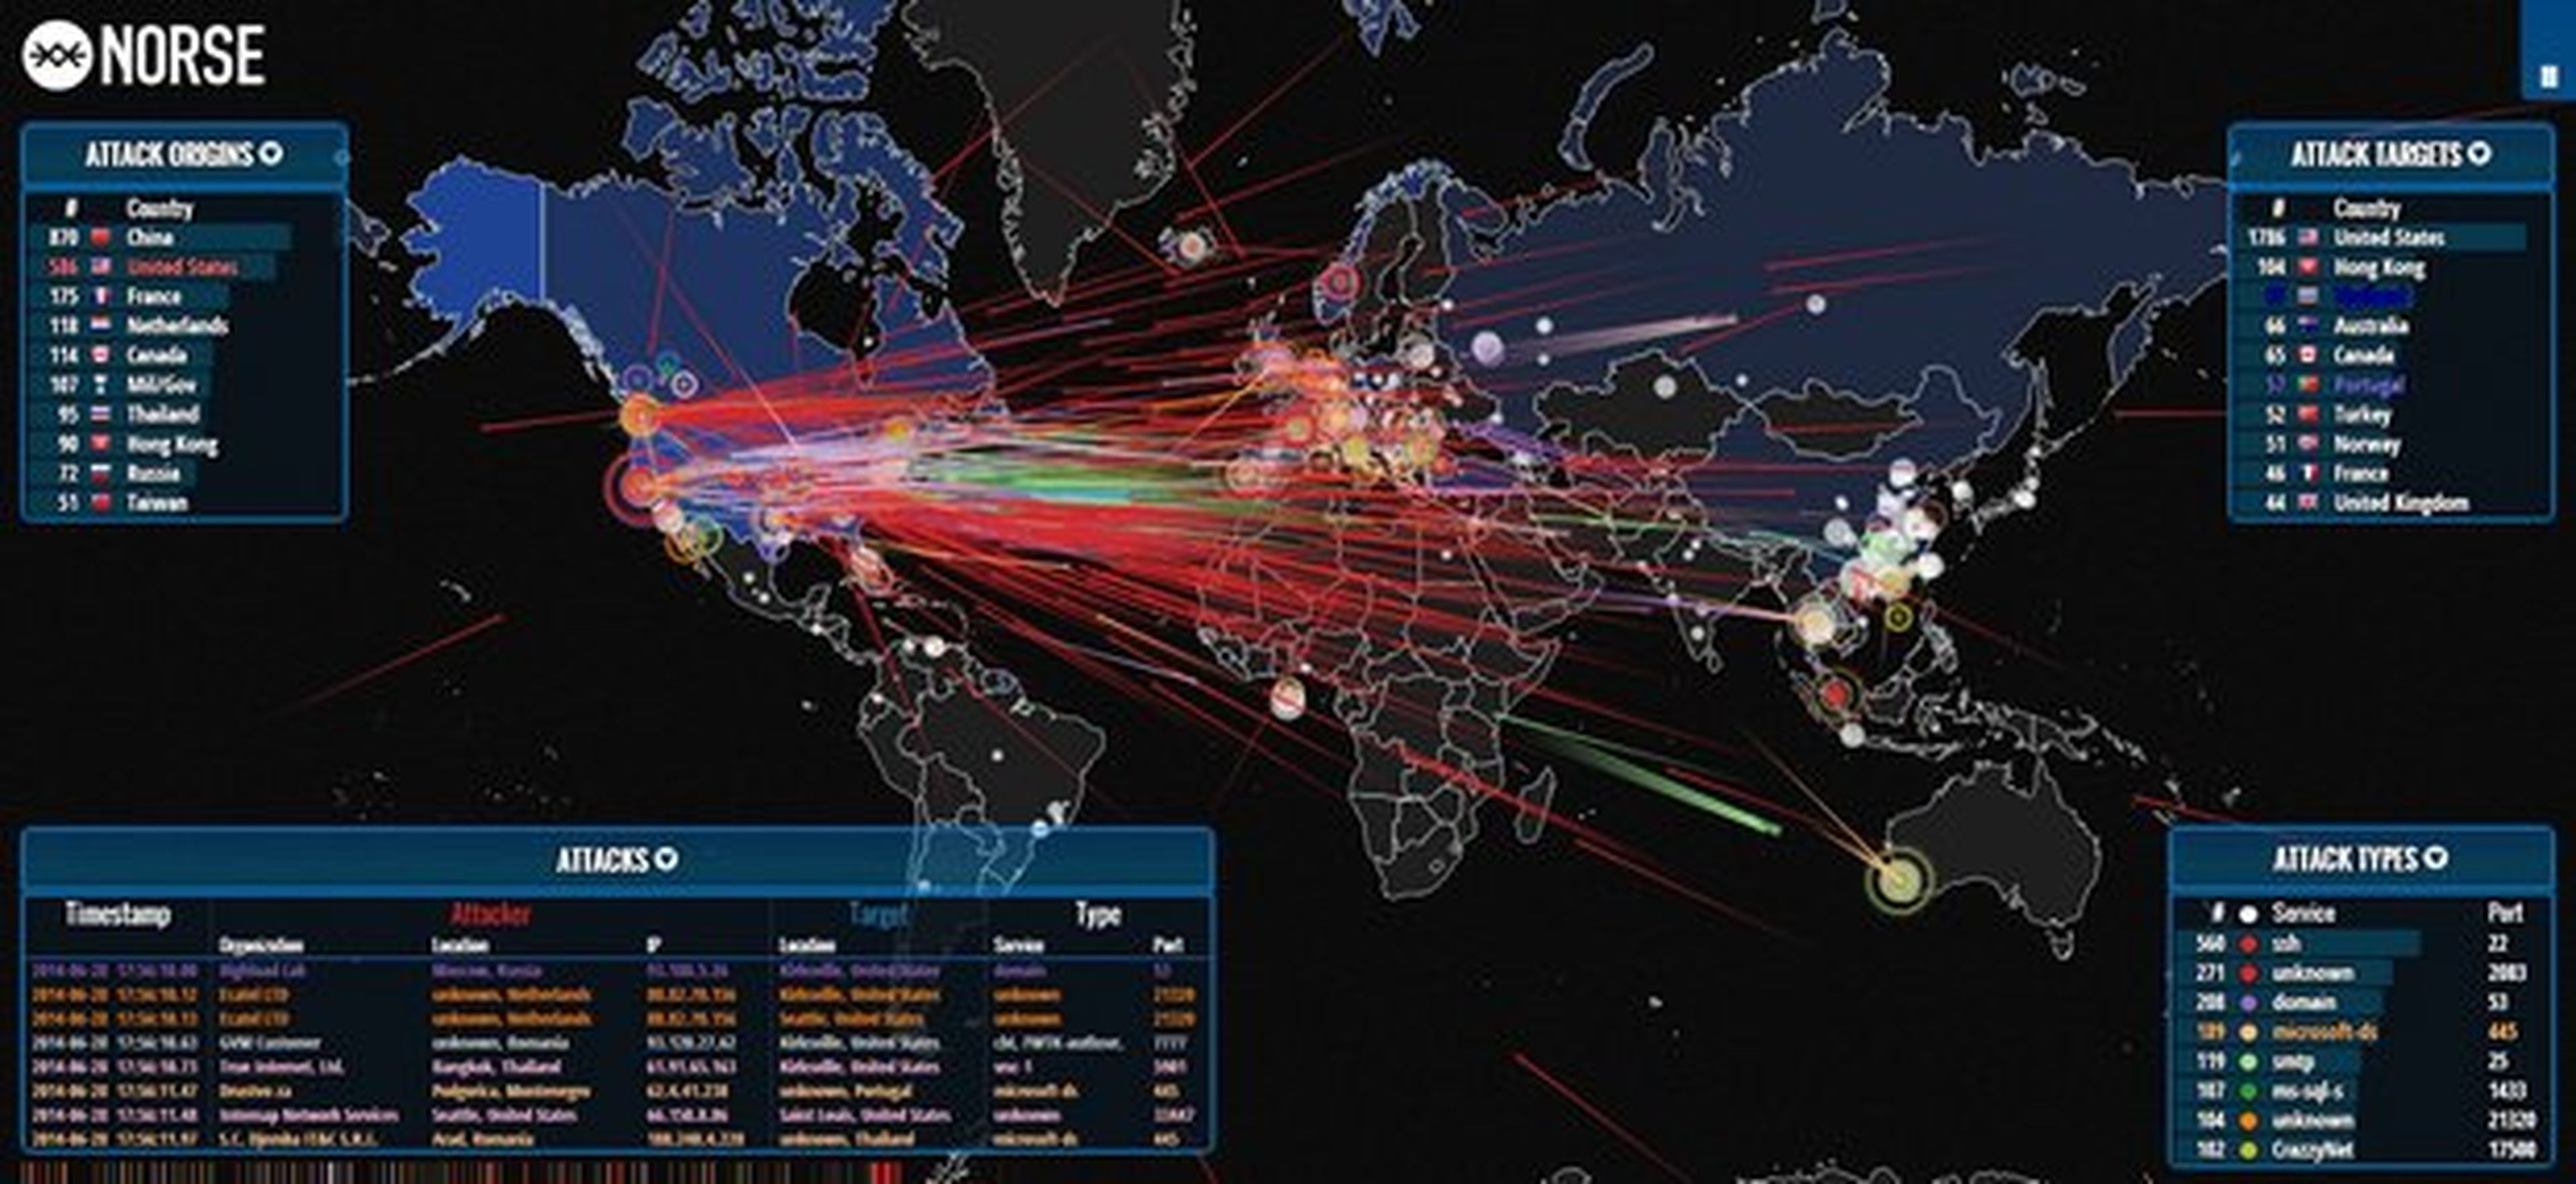 Norse Mapa Ataques Hacker